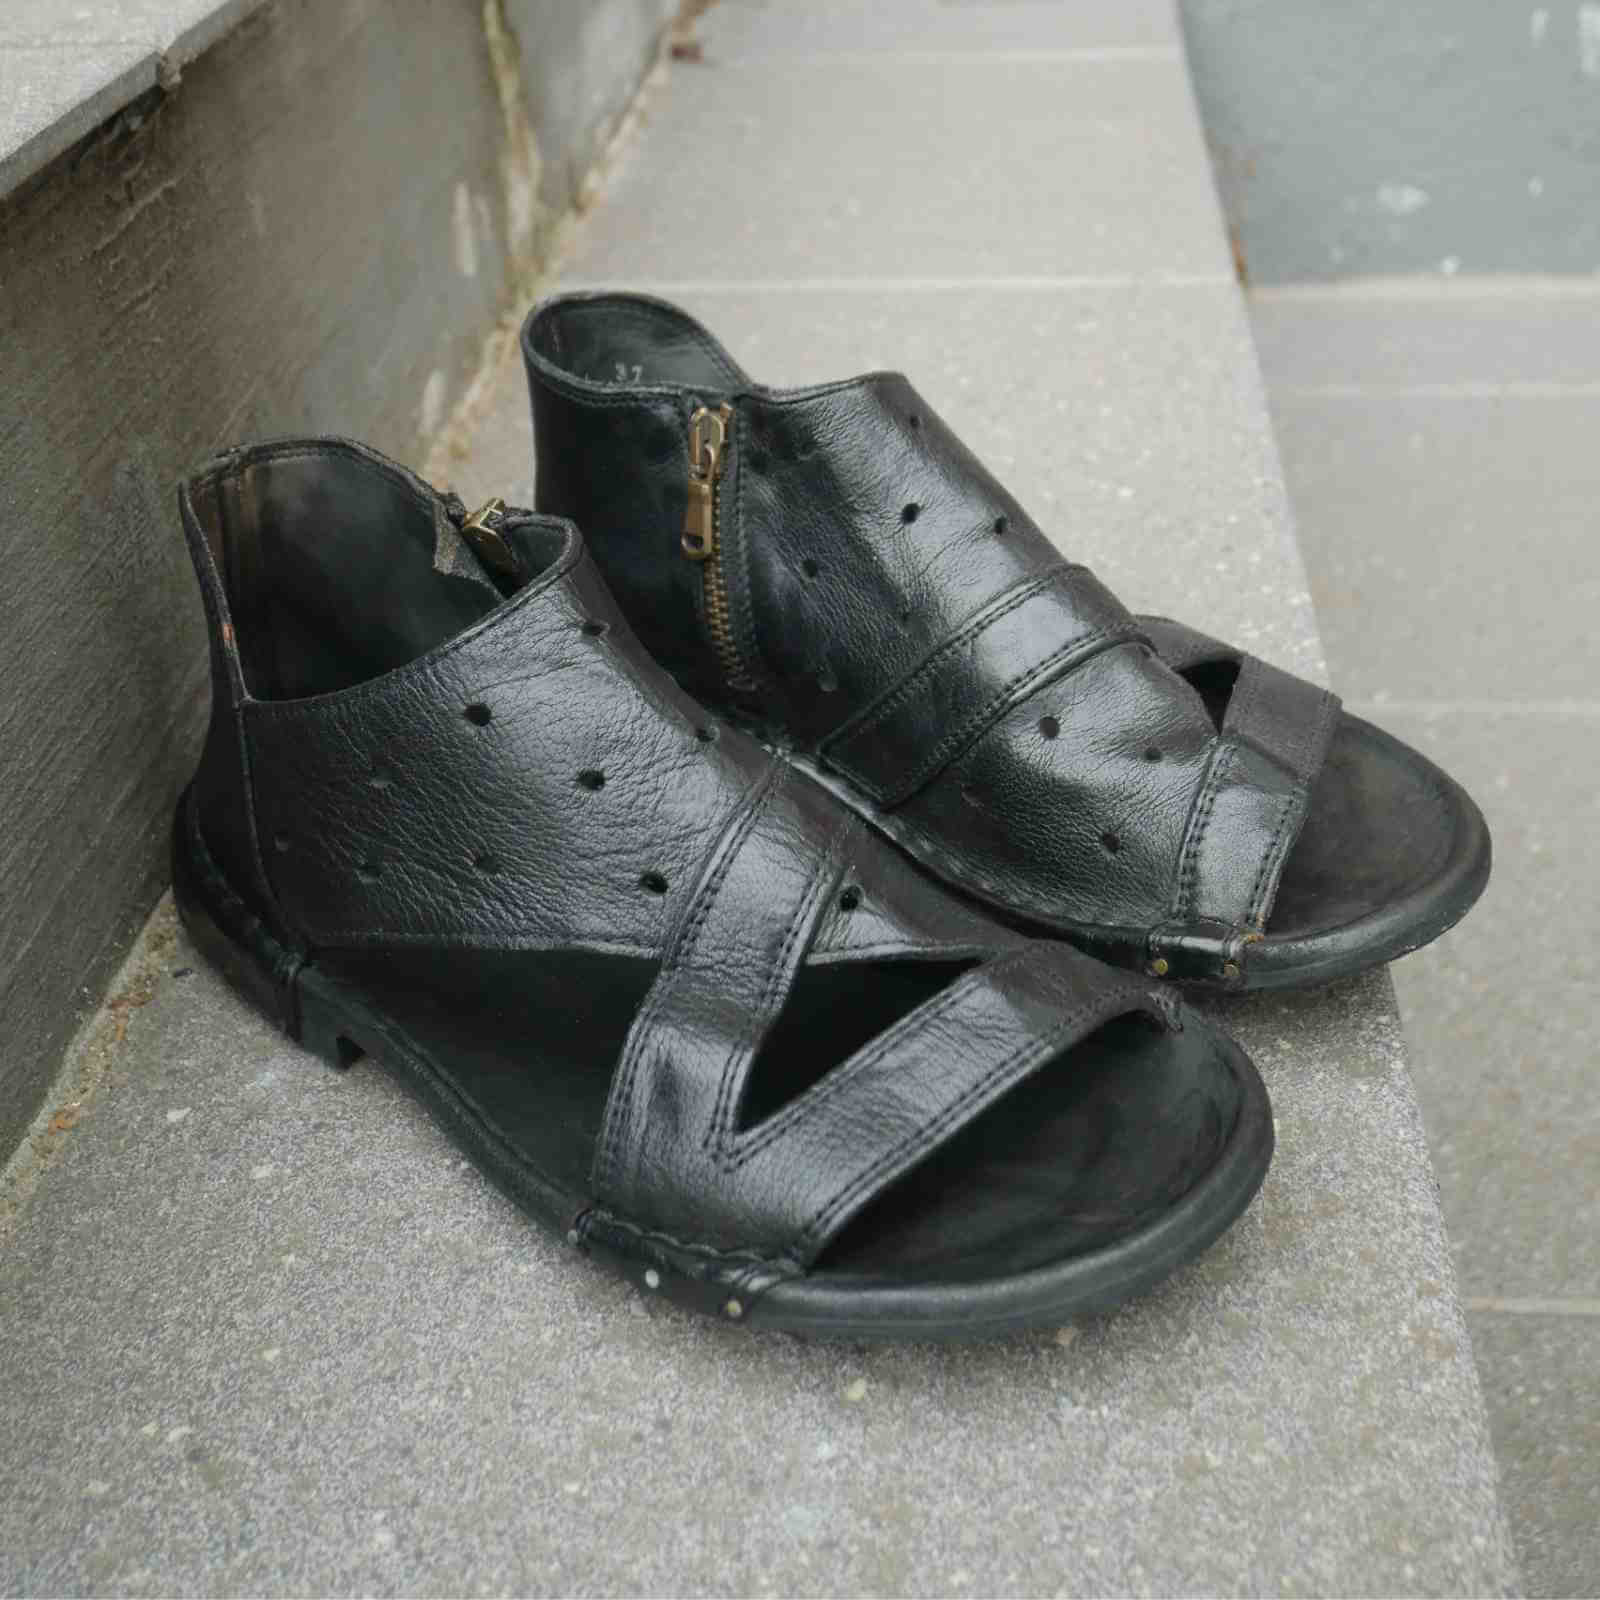 Sort skind sandal med åben tå fra Bubetti. Lynlås på indersiden